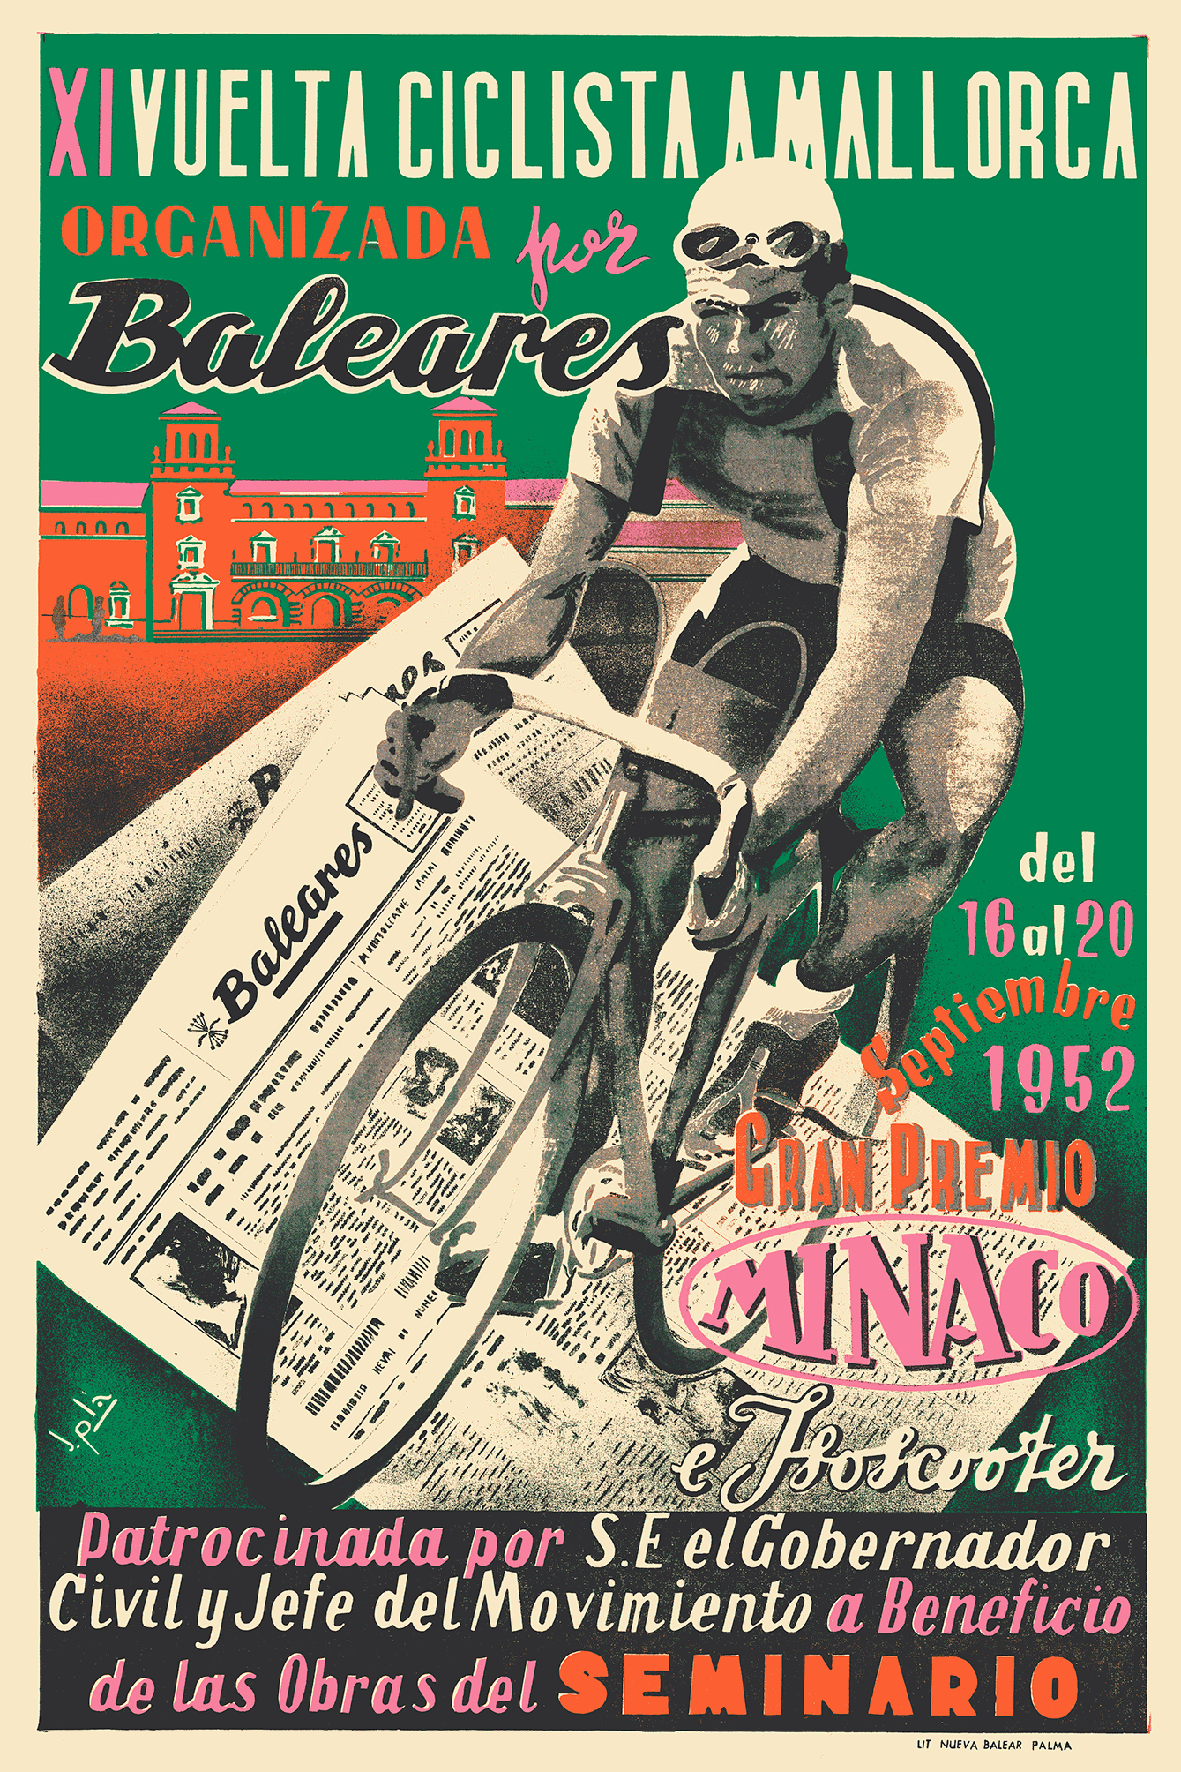 XI Vuelta Ciclista a Mallorca, 1952.